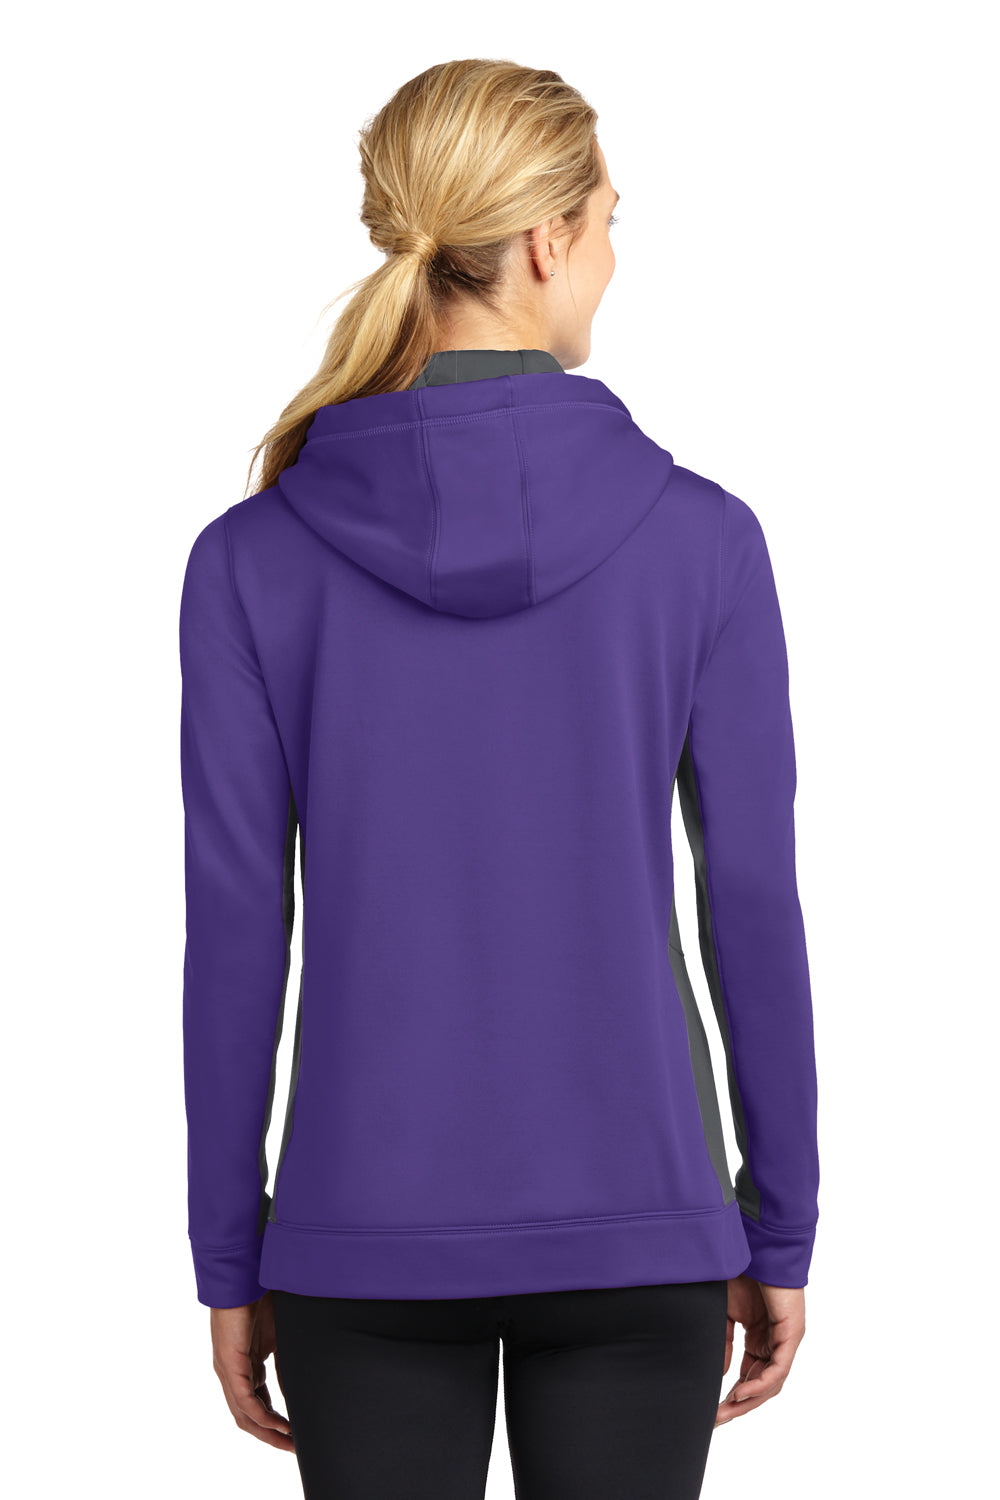 Sport-Tek LST235 Womens Sport-Wick Moisture Wicking Fleece Hooded Sweatshirt Hoodie Purple/Grey Back